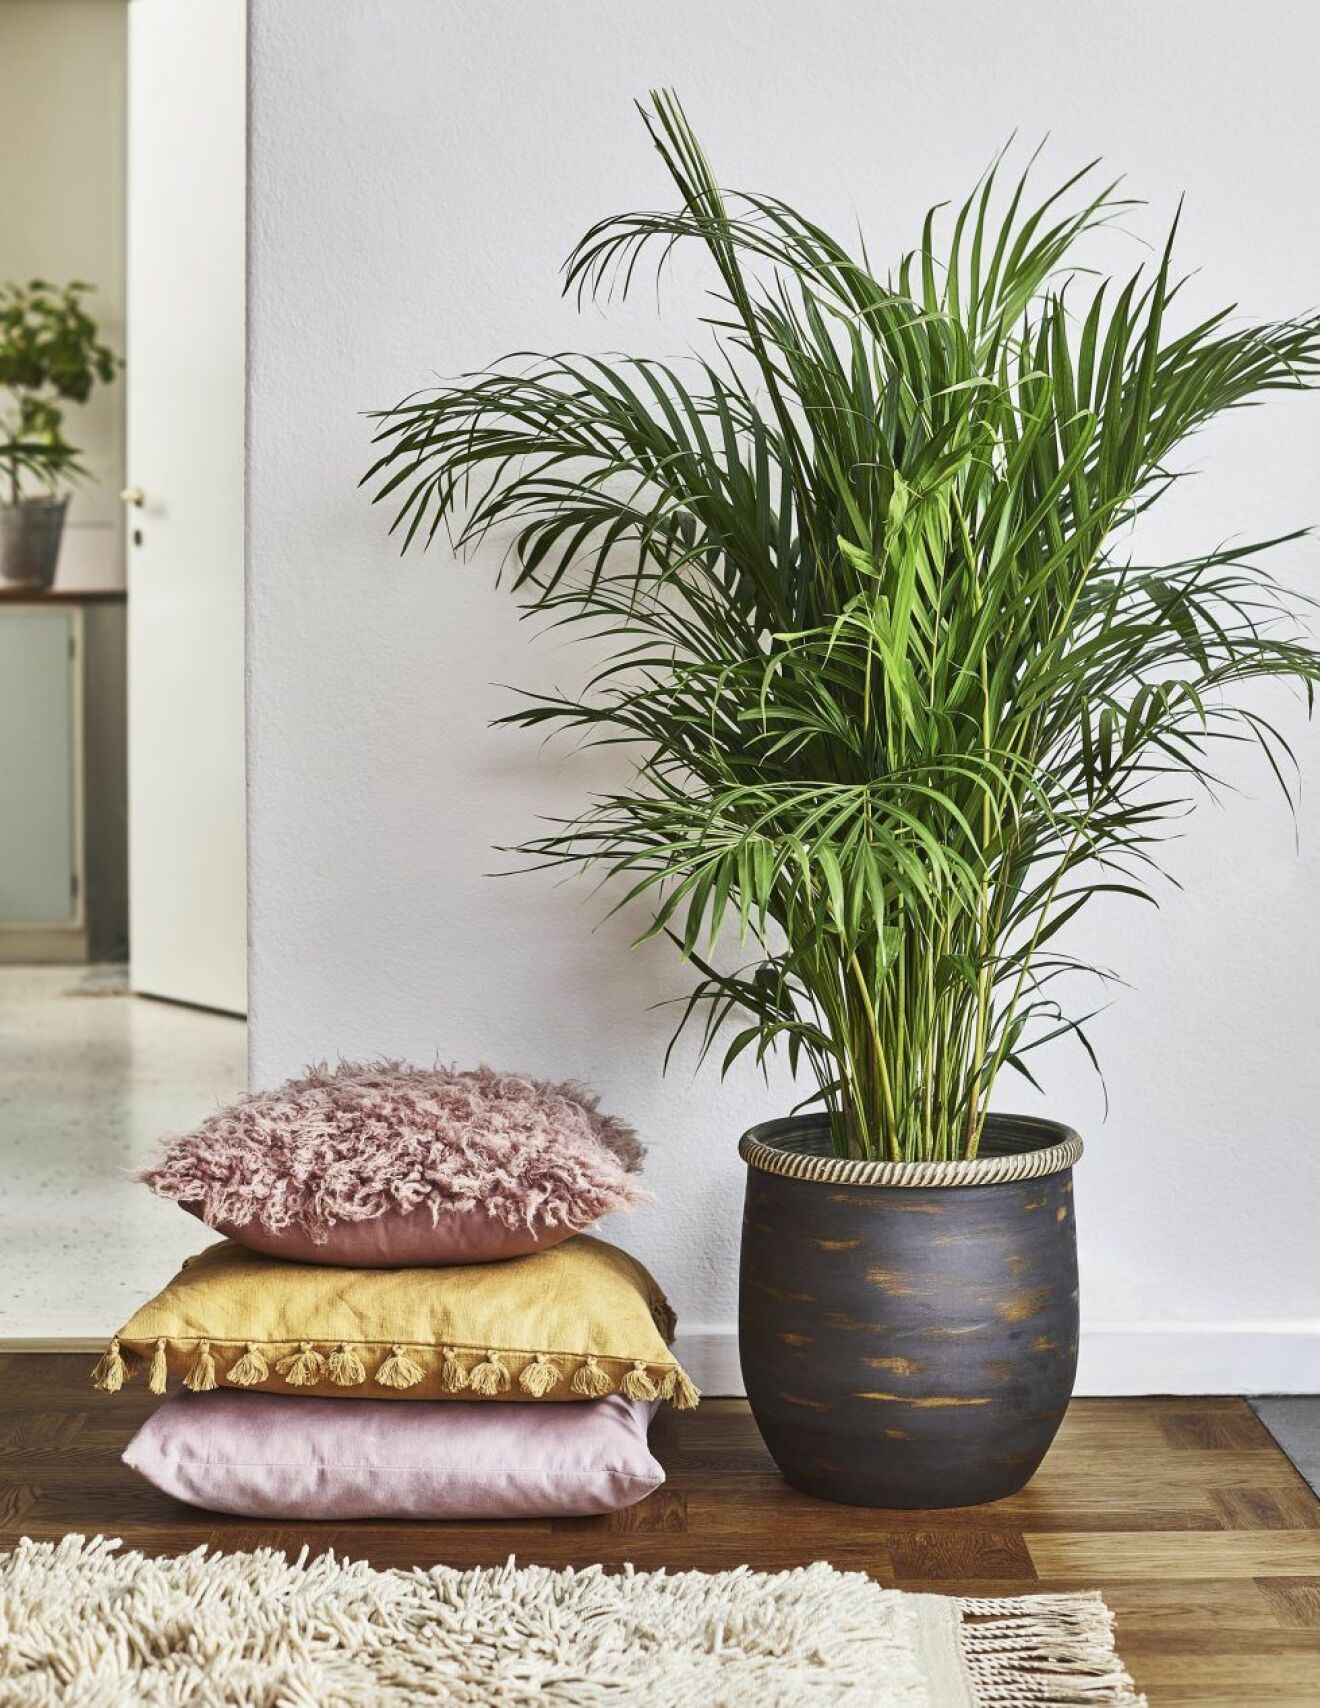 Guldpalm skapar djungelkänsla i hemmet och renar luften.